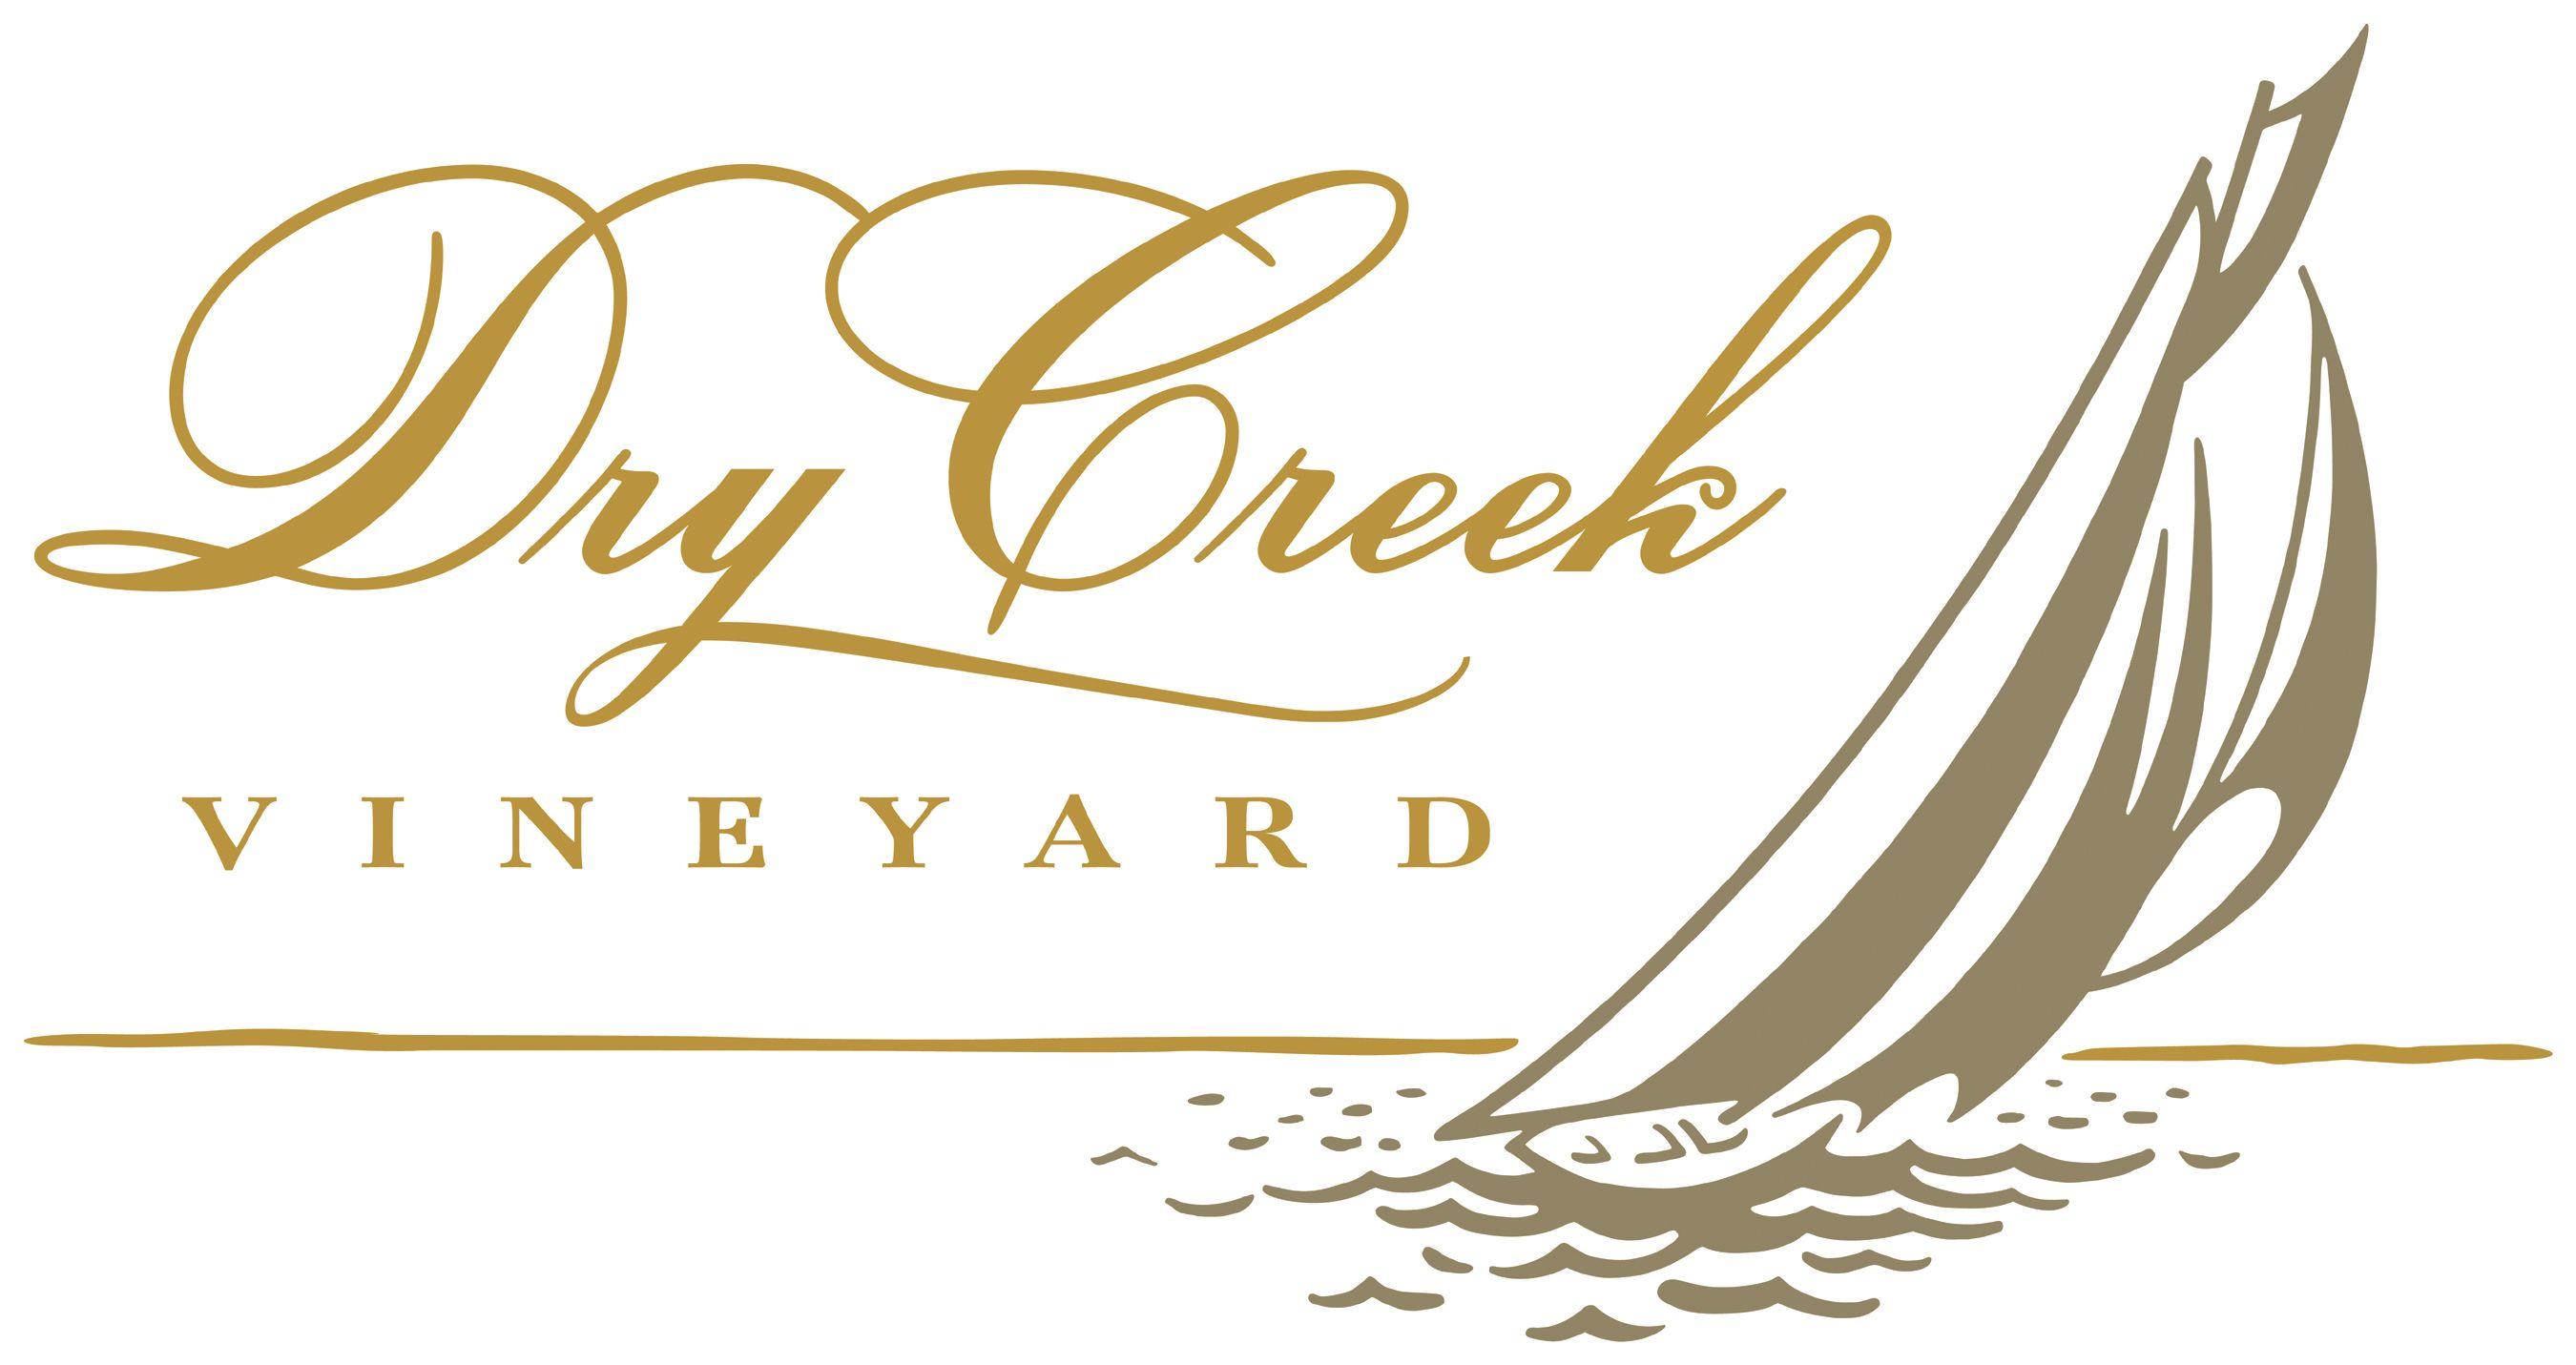 Vineyard Logo - Logos. Dry Creek Vineyard